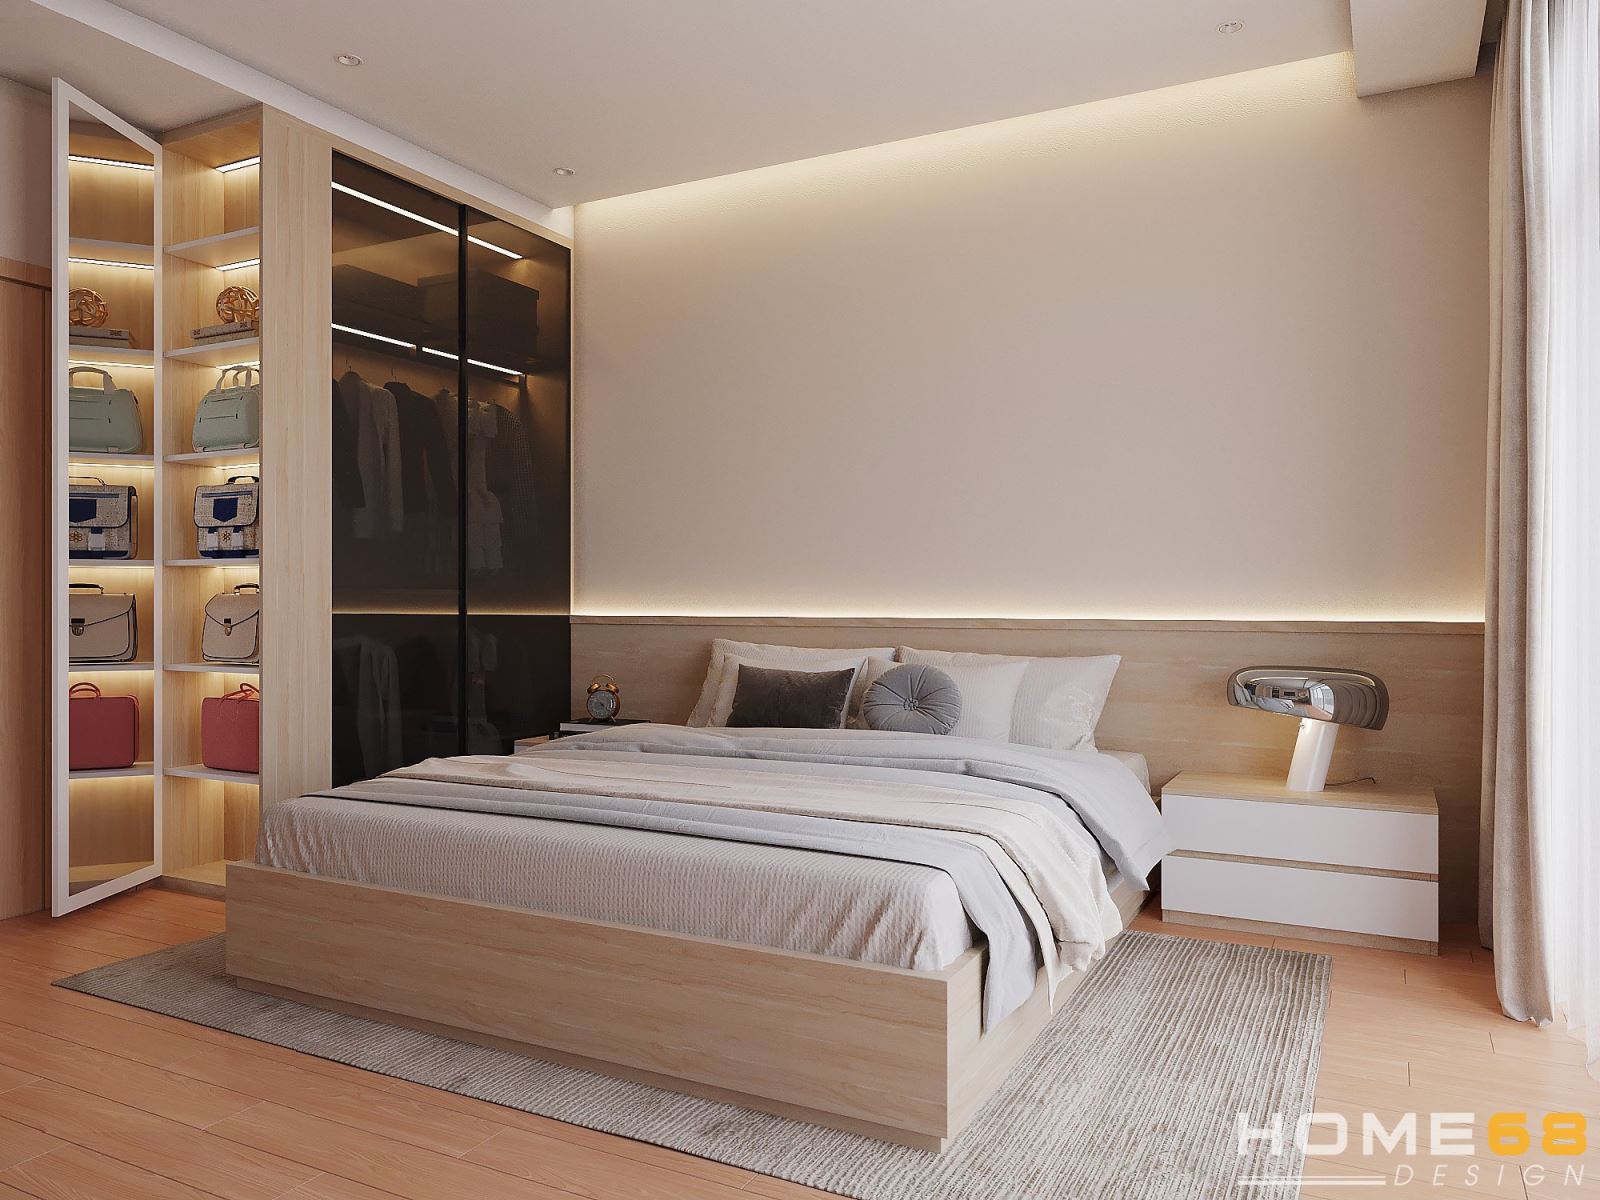 Thiết kế nội thất phòng ngủ hiện đại, đầy tinh tế- HOME68